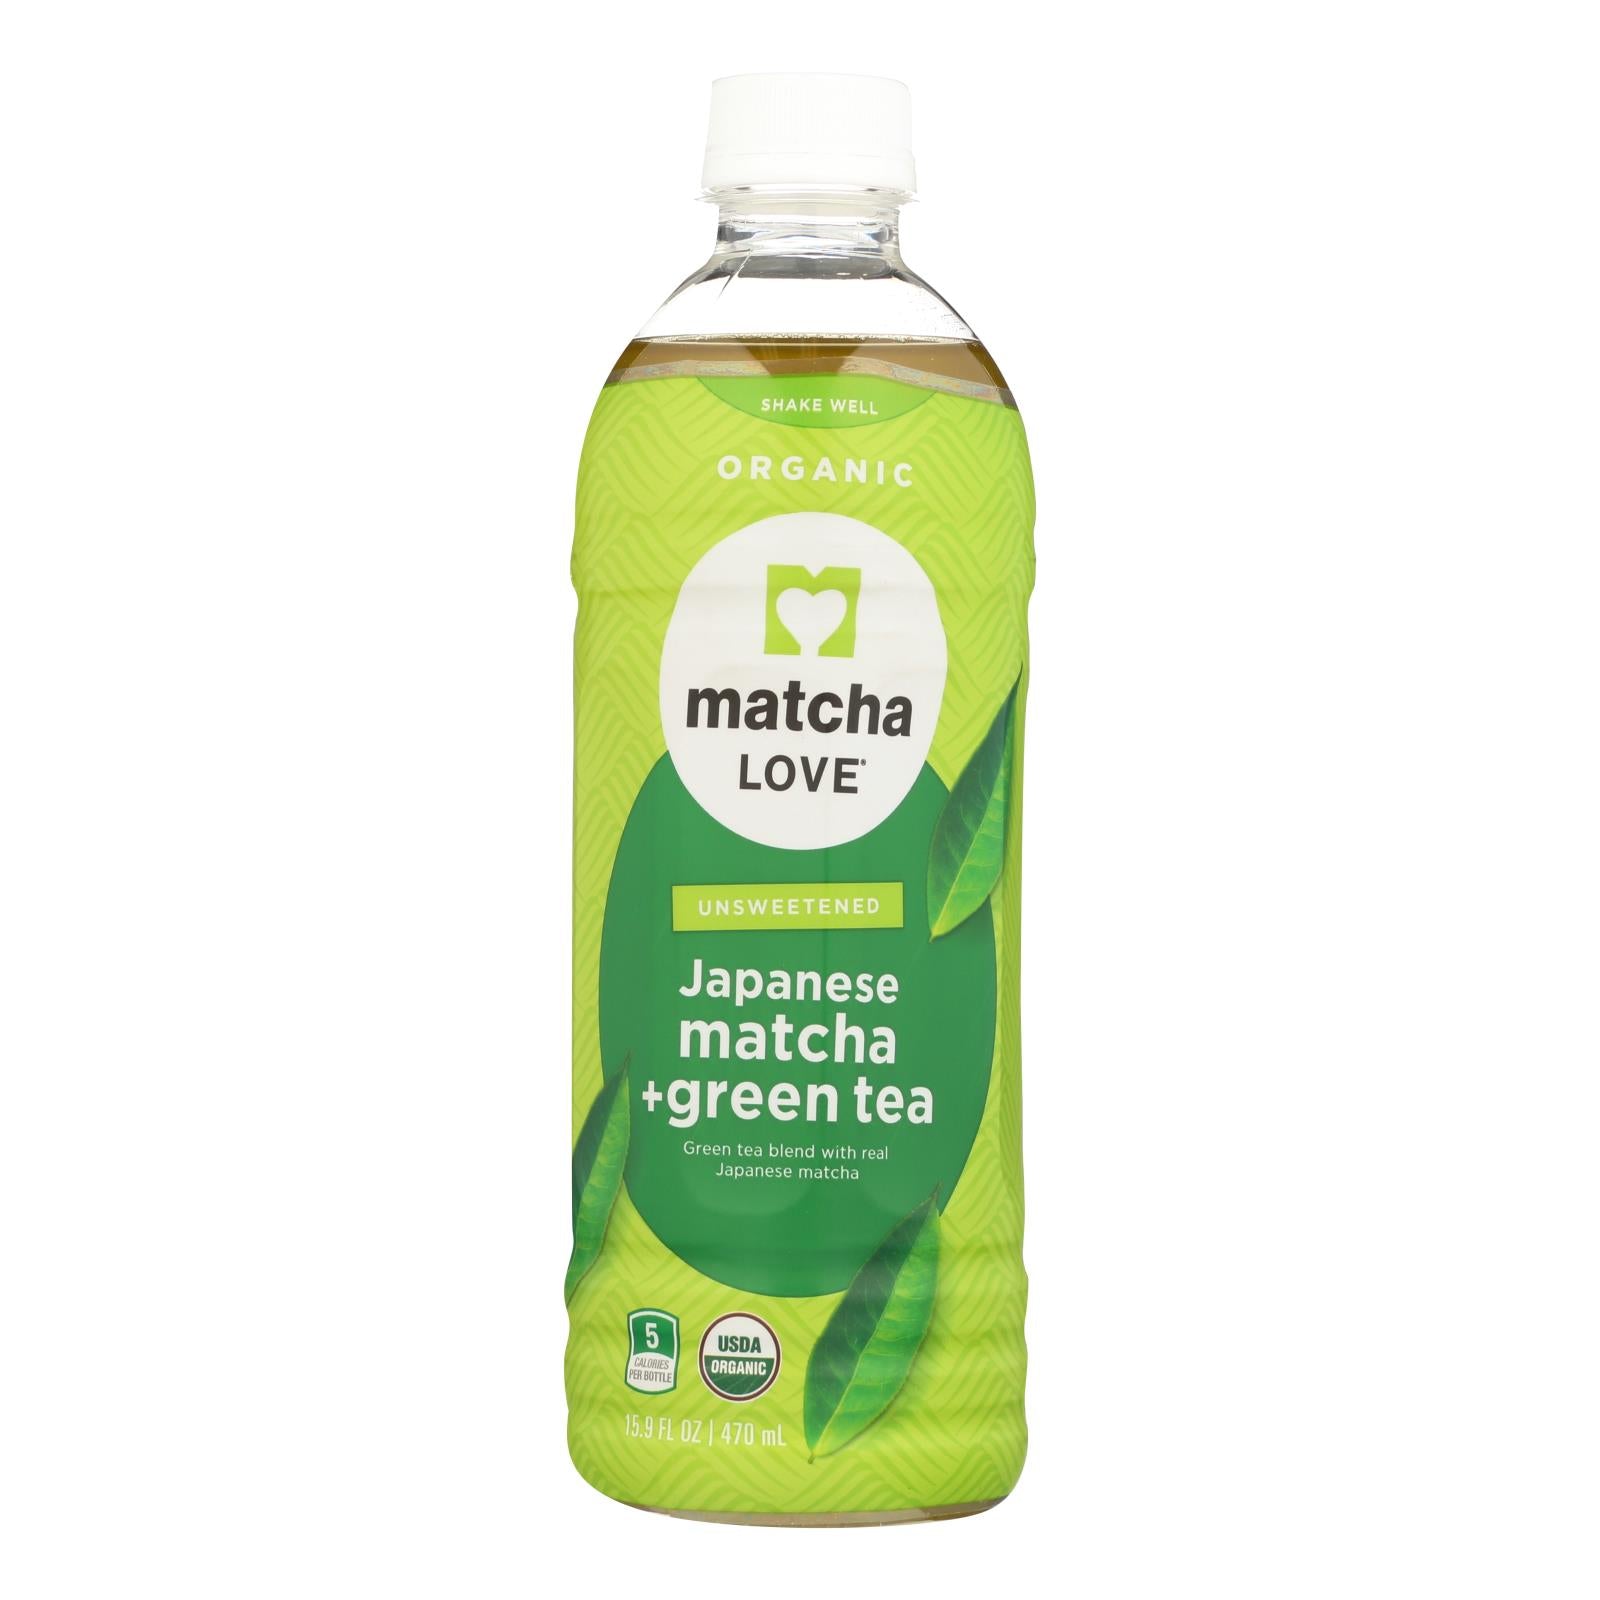 L'amour du matcha, Matcha Love Drnk - Organic - Matcha Green Tea - Case of 12 - 15.9 fl oz (Pack of 12)